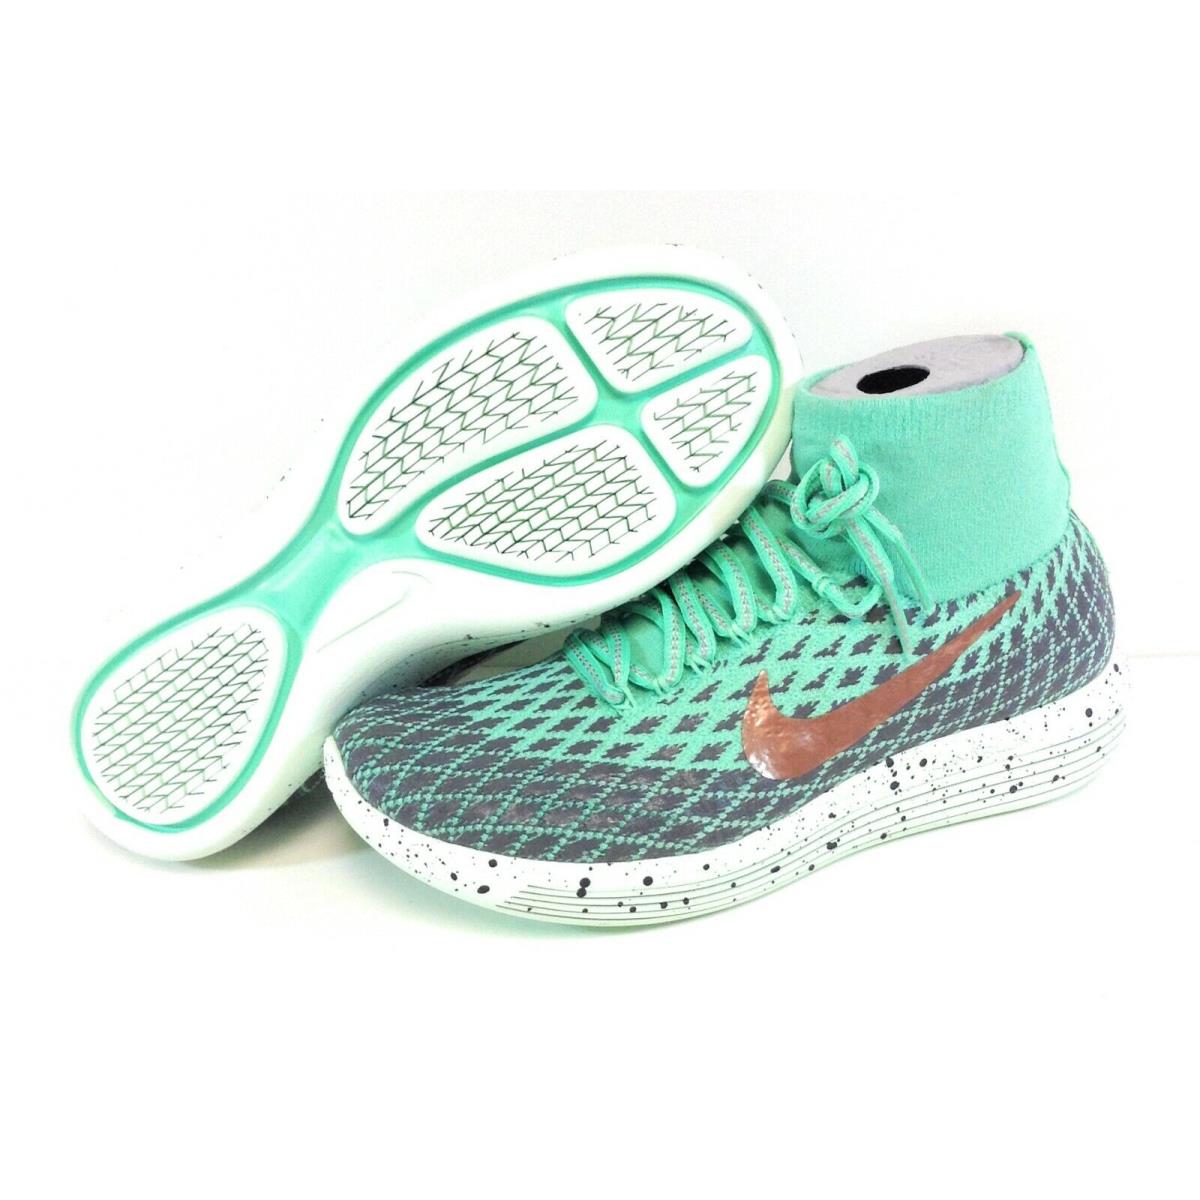 Womens Nike Lunarepic Flyknit Shield 849665 300 Green Glow 2016 Sneakers Shoes